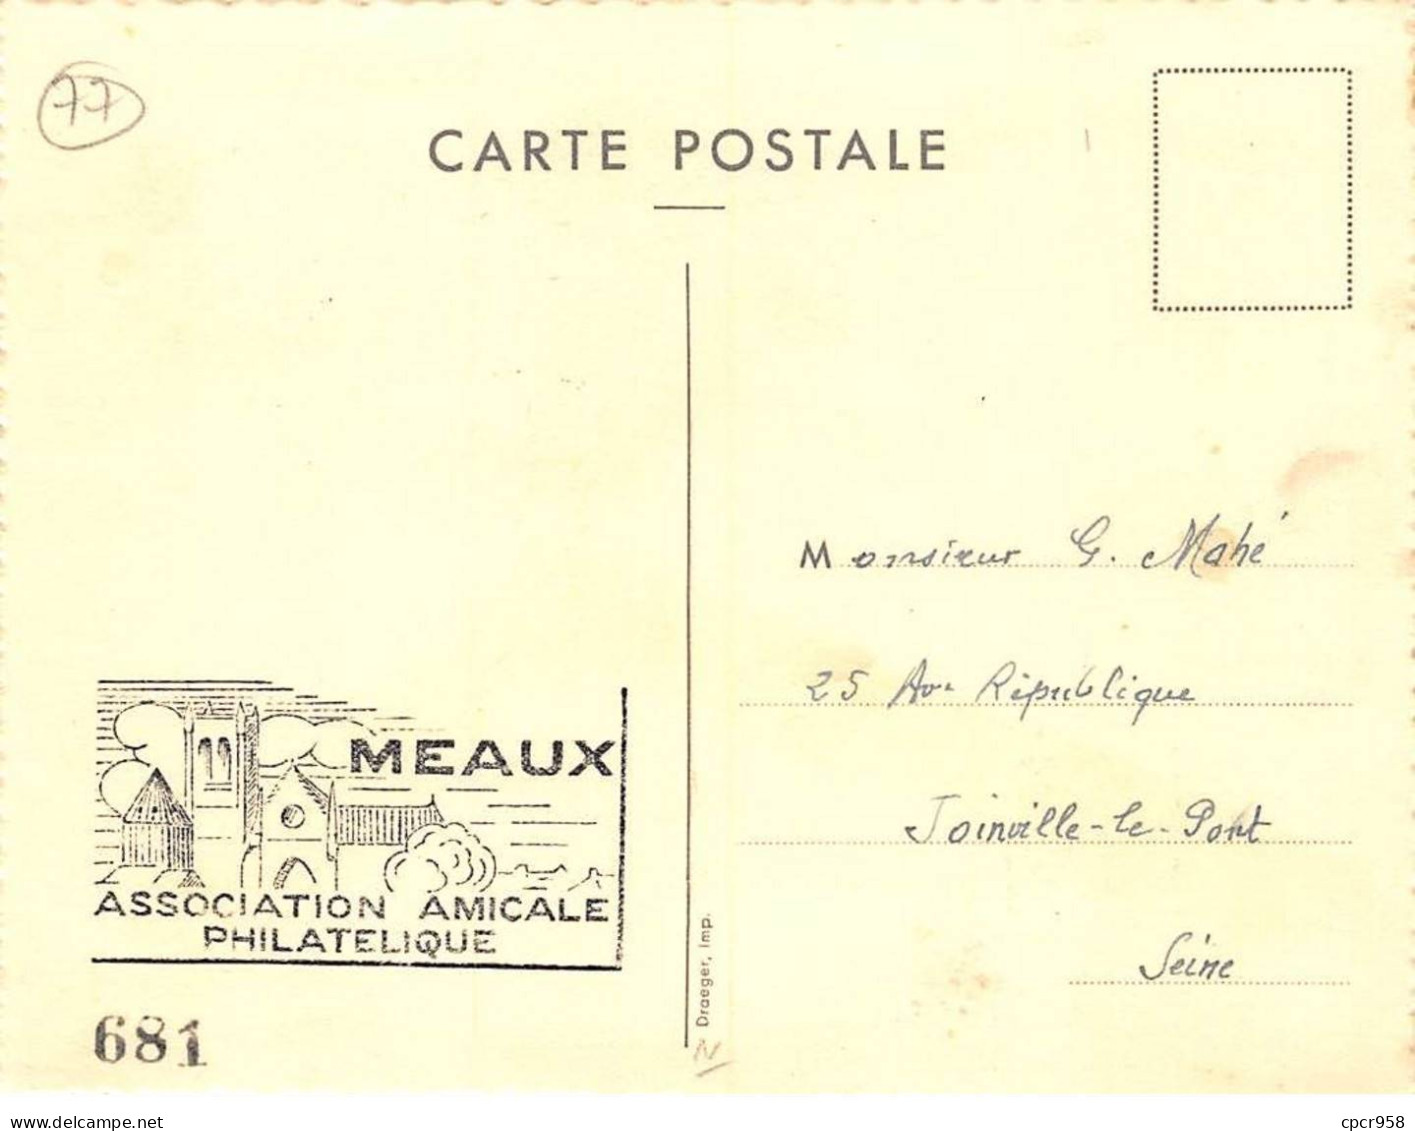 77 - SAN62125 - MEAUX - 1849-1949 - Exposition Philatélique  - CPSM 10x15 Cm - Meaux